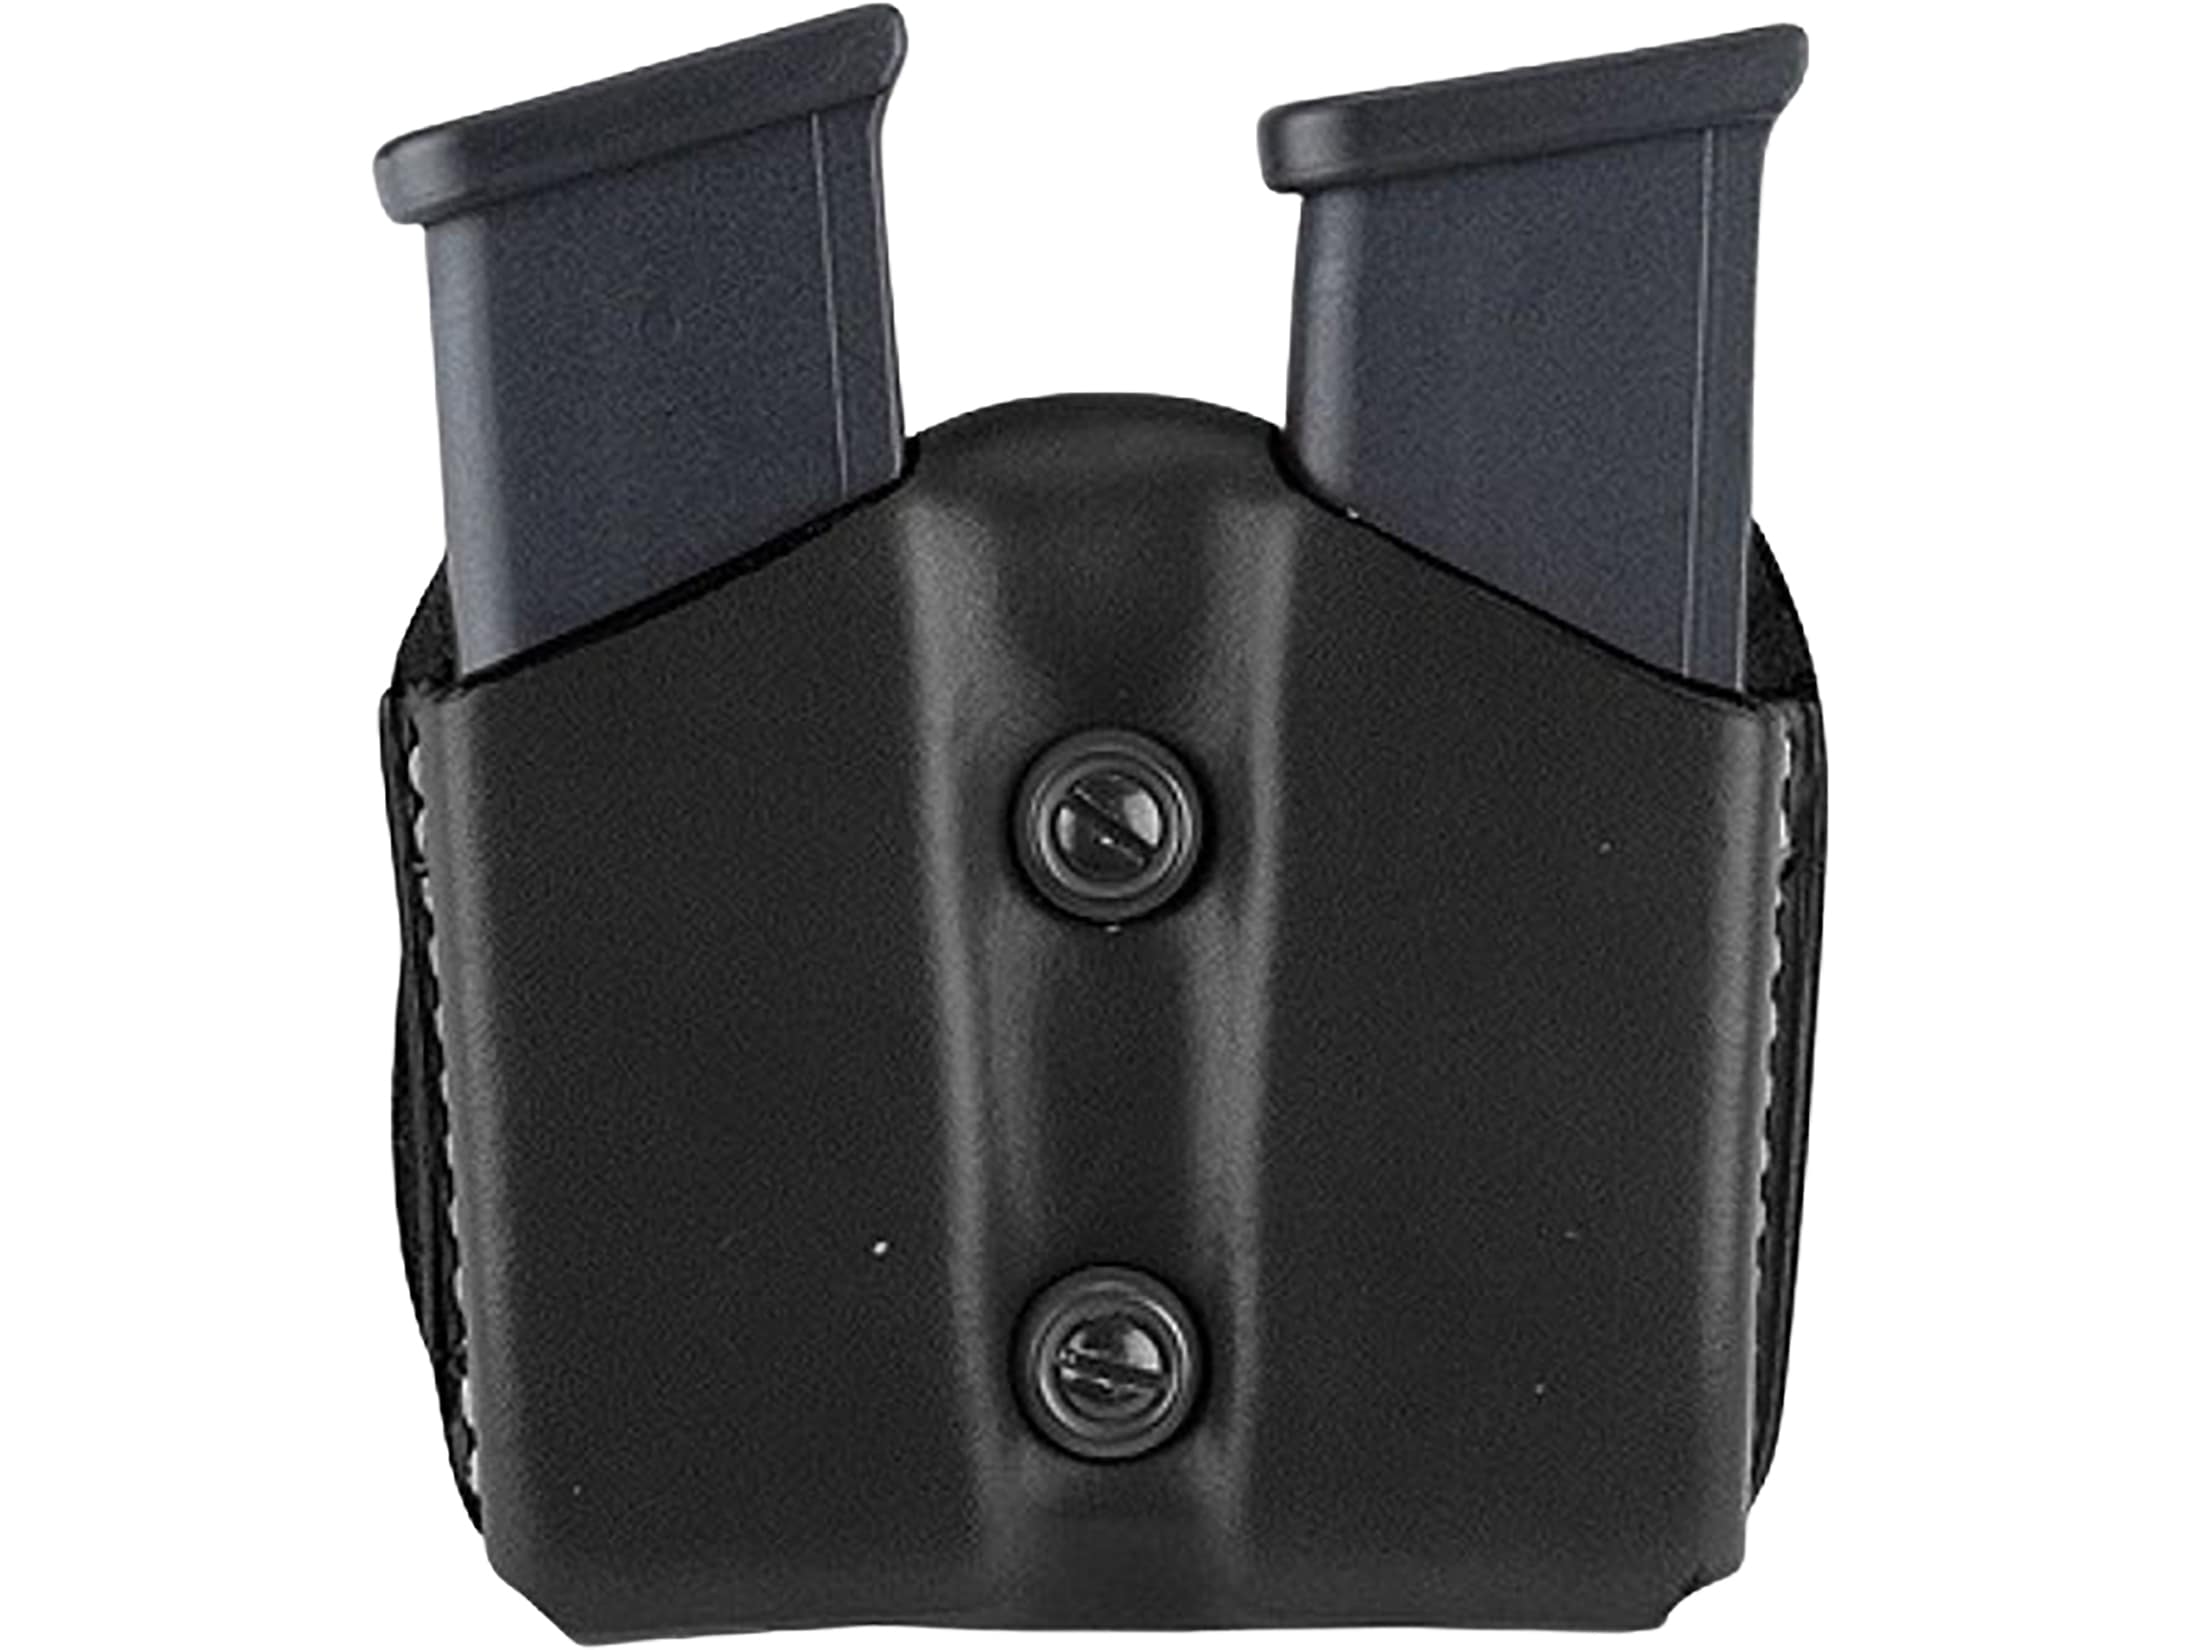 Details about   DeSantis A01 DOUBLE MAG Pouch Fits Glock 43 Ambidextrous Black Leather A01BJYYZ0 